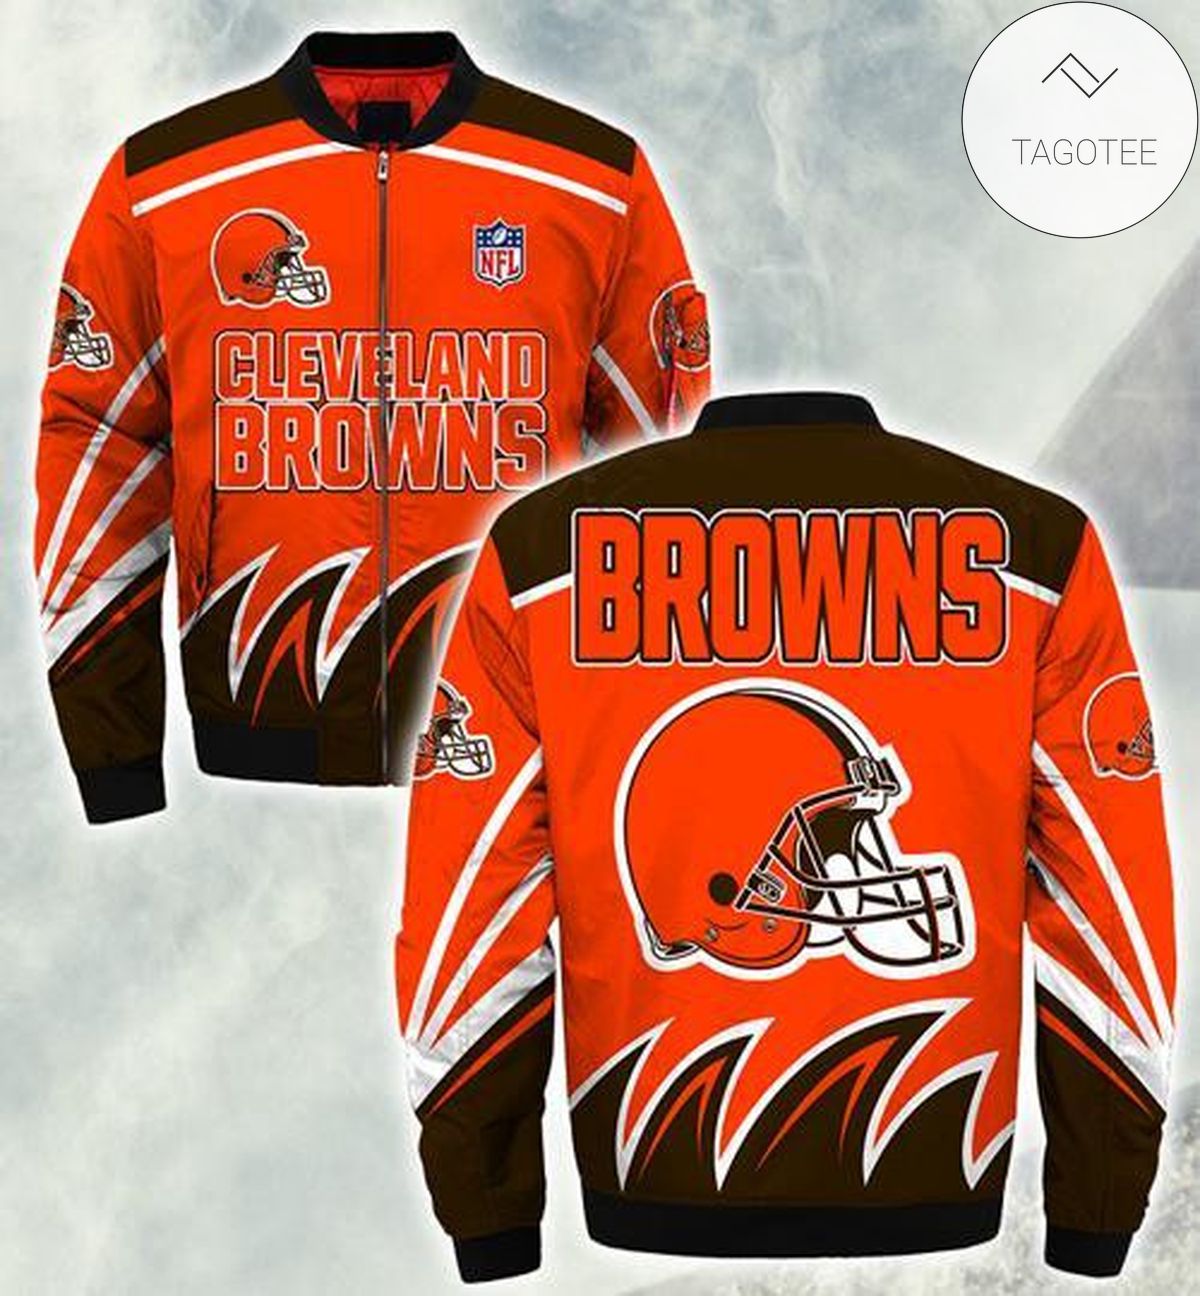 Cleveland Browns Bomber Jacket Black On Orange